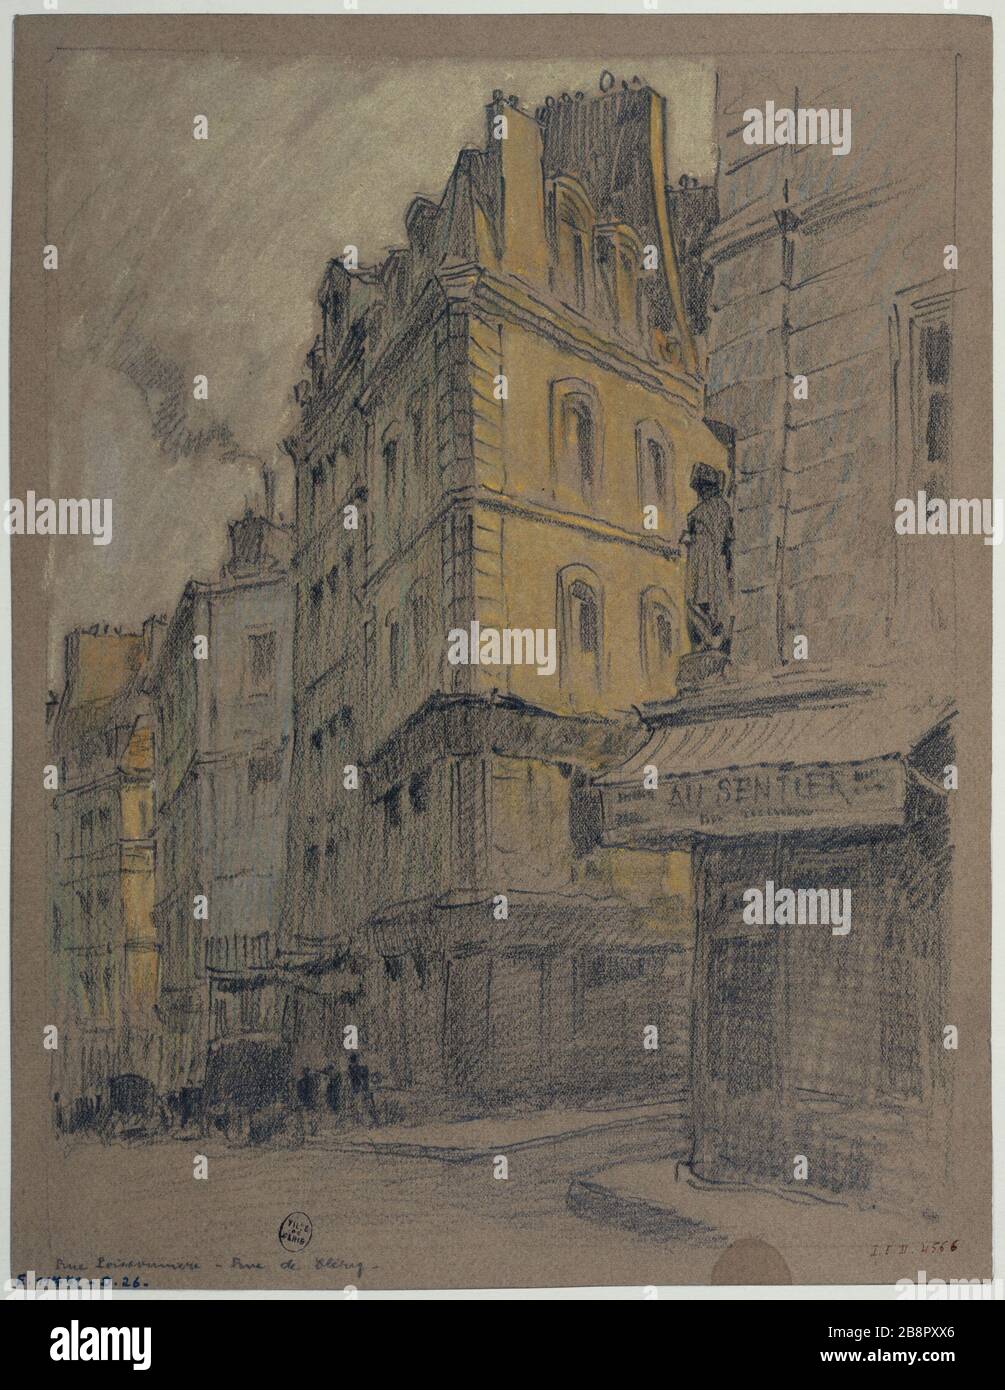 The Poissonnière Street and Rue de Clery, about 1926 Gustave Ferdinand Boberg (1860-1946), architecte suédois. La rue Poissonnière et la rue de Cléry. Crayon. Paris (IIème arr.), vers 1926. Paris, musée Carnavalet. Stock Photo